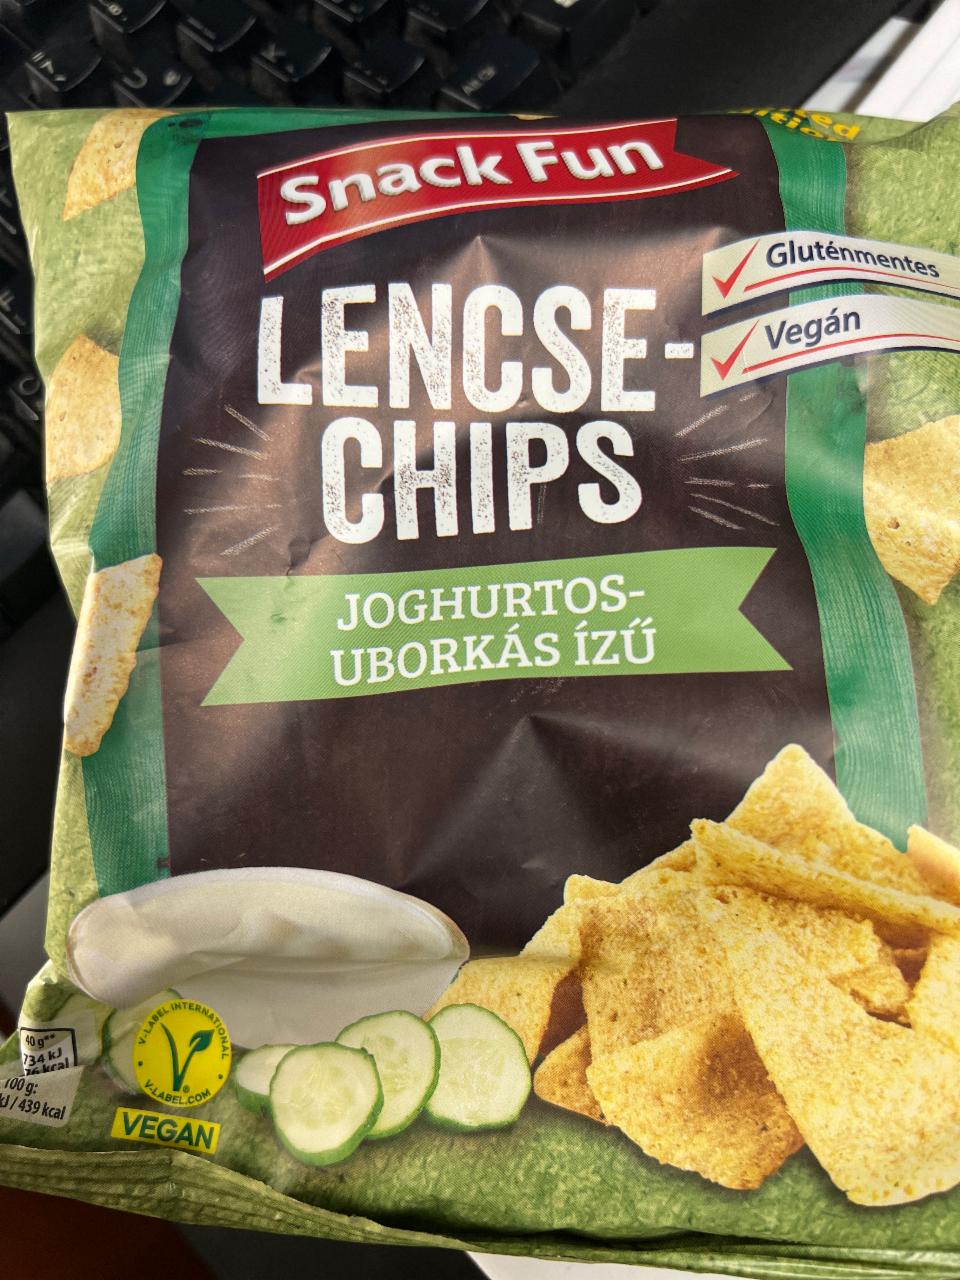 Képek - Lencse chips joghurtos-uborkás ízű Snack Fun